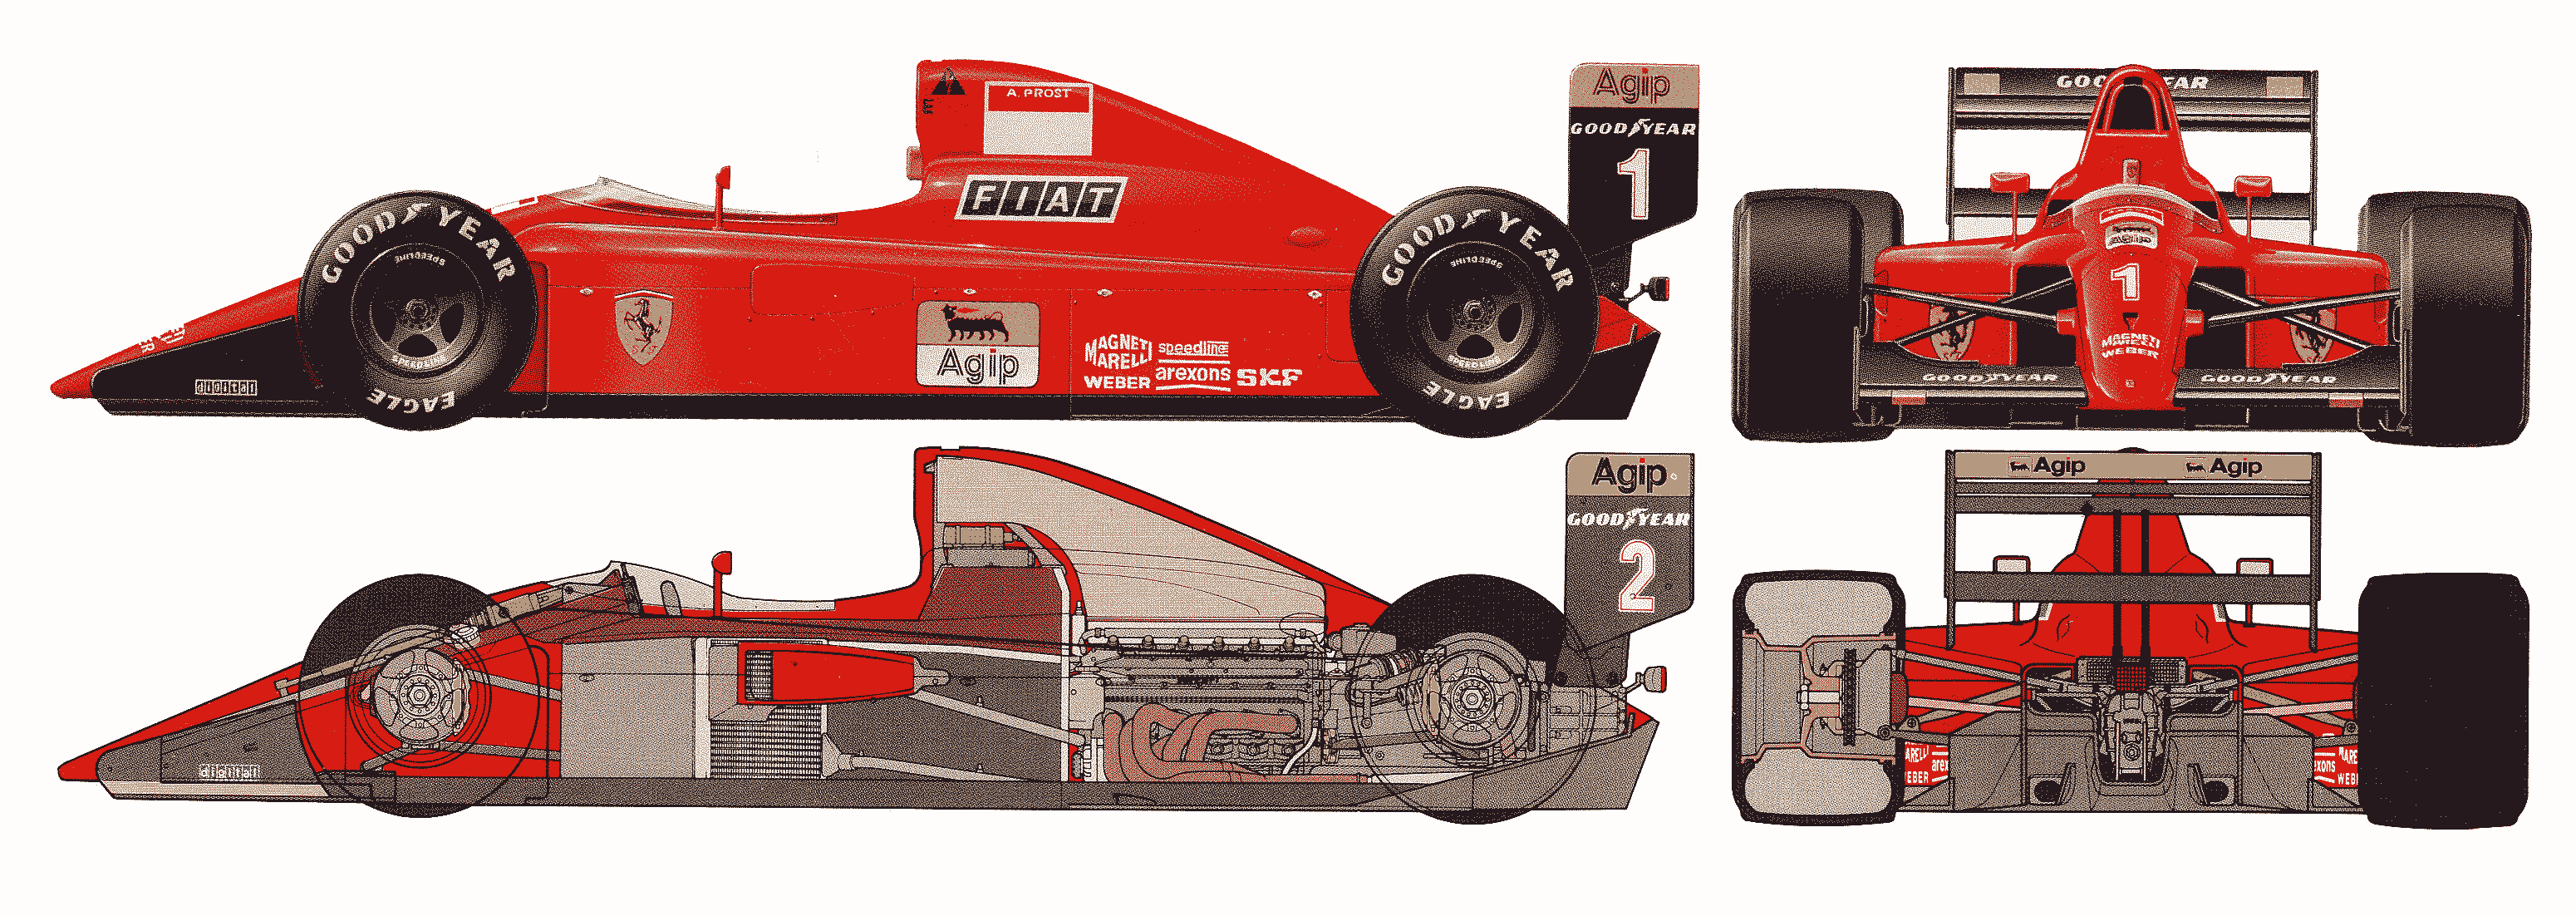 Ferrari 641 blueprint